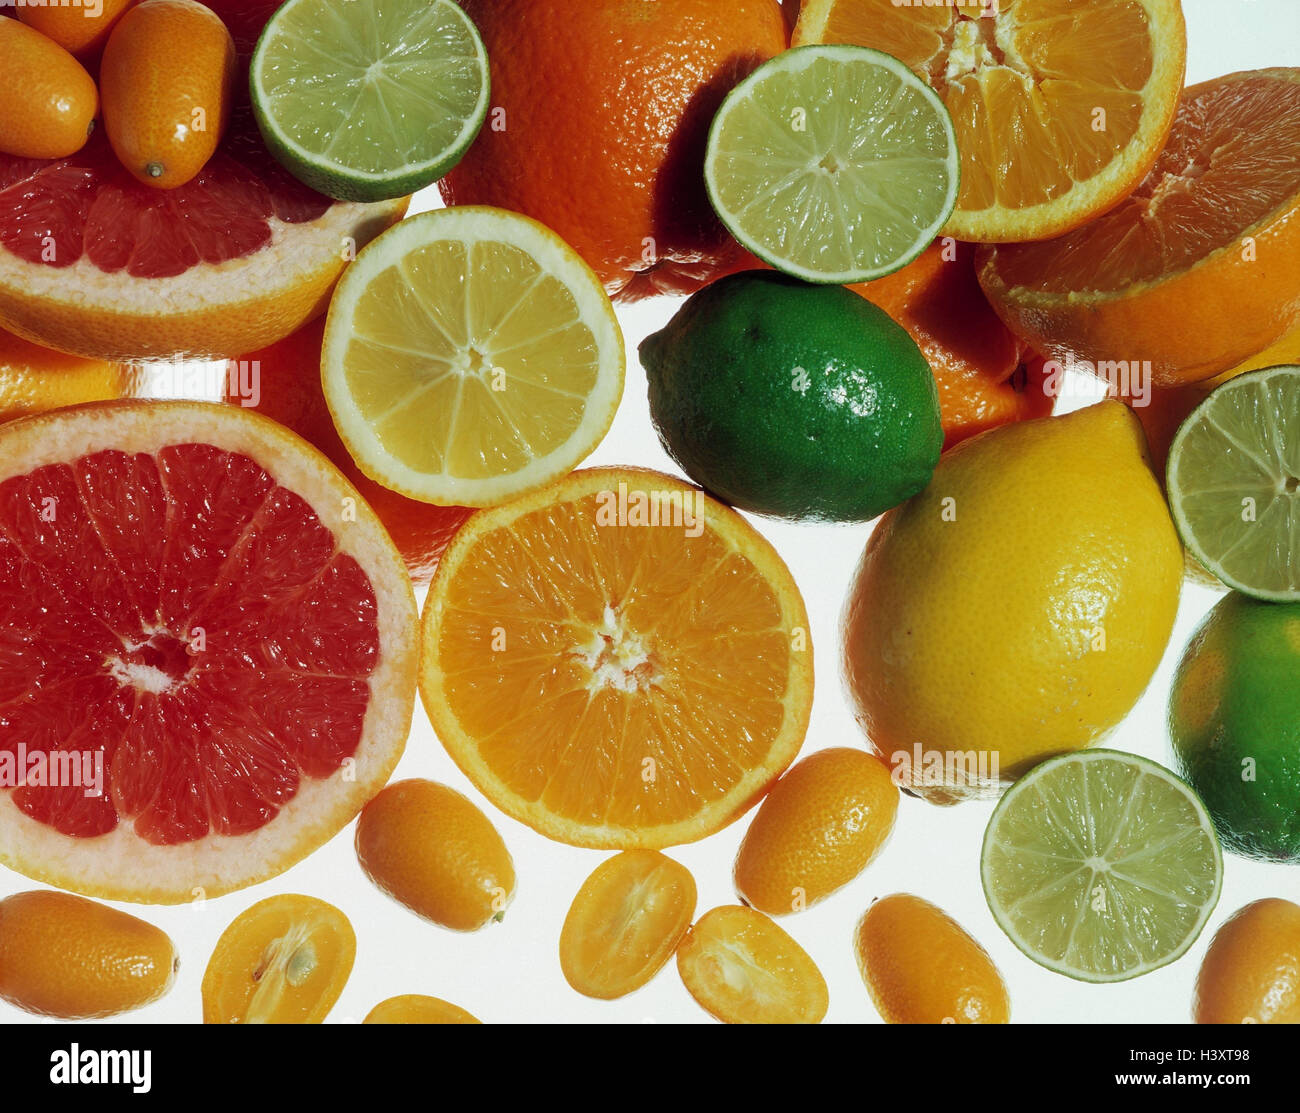 Agrumi, varie forature, agrumi, limone, arancio, calce Calce, Arancio sanguigno, kumquat, nano arancione, ricco di vitamine, frutta, frutta, frutta, la nutrizione sana, metà metà, Foto Stock